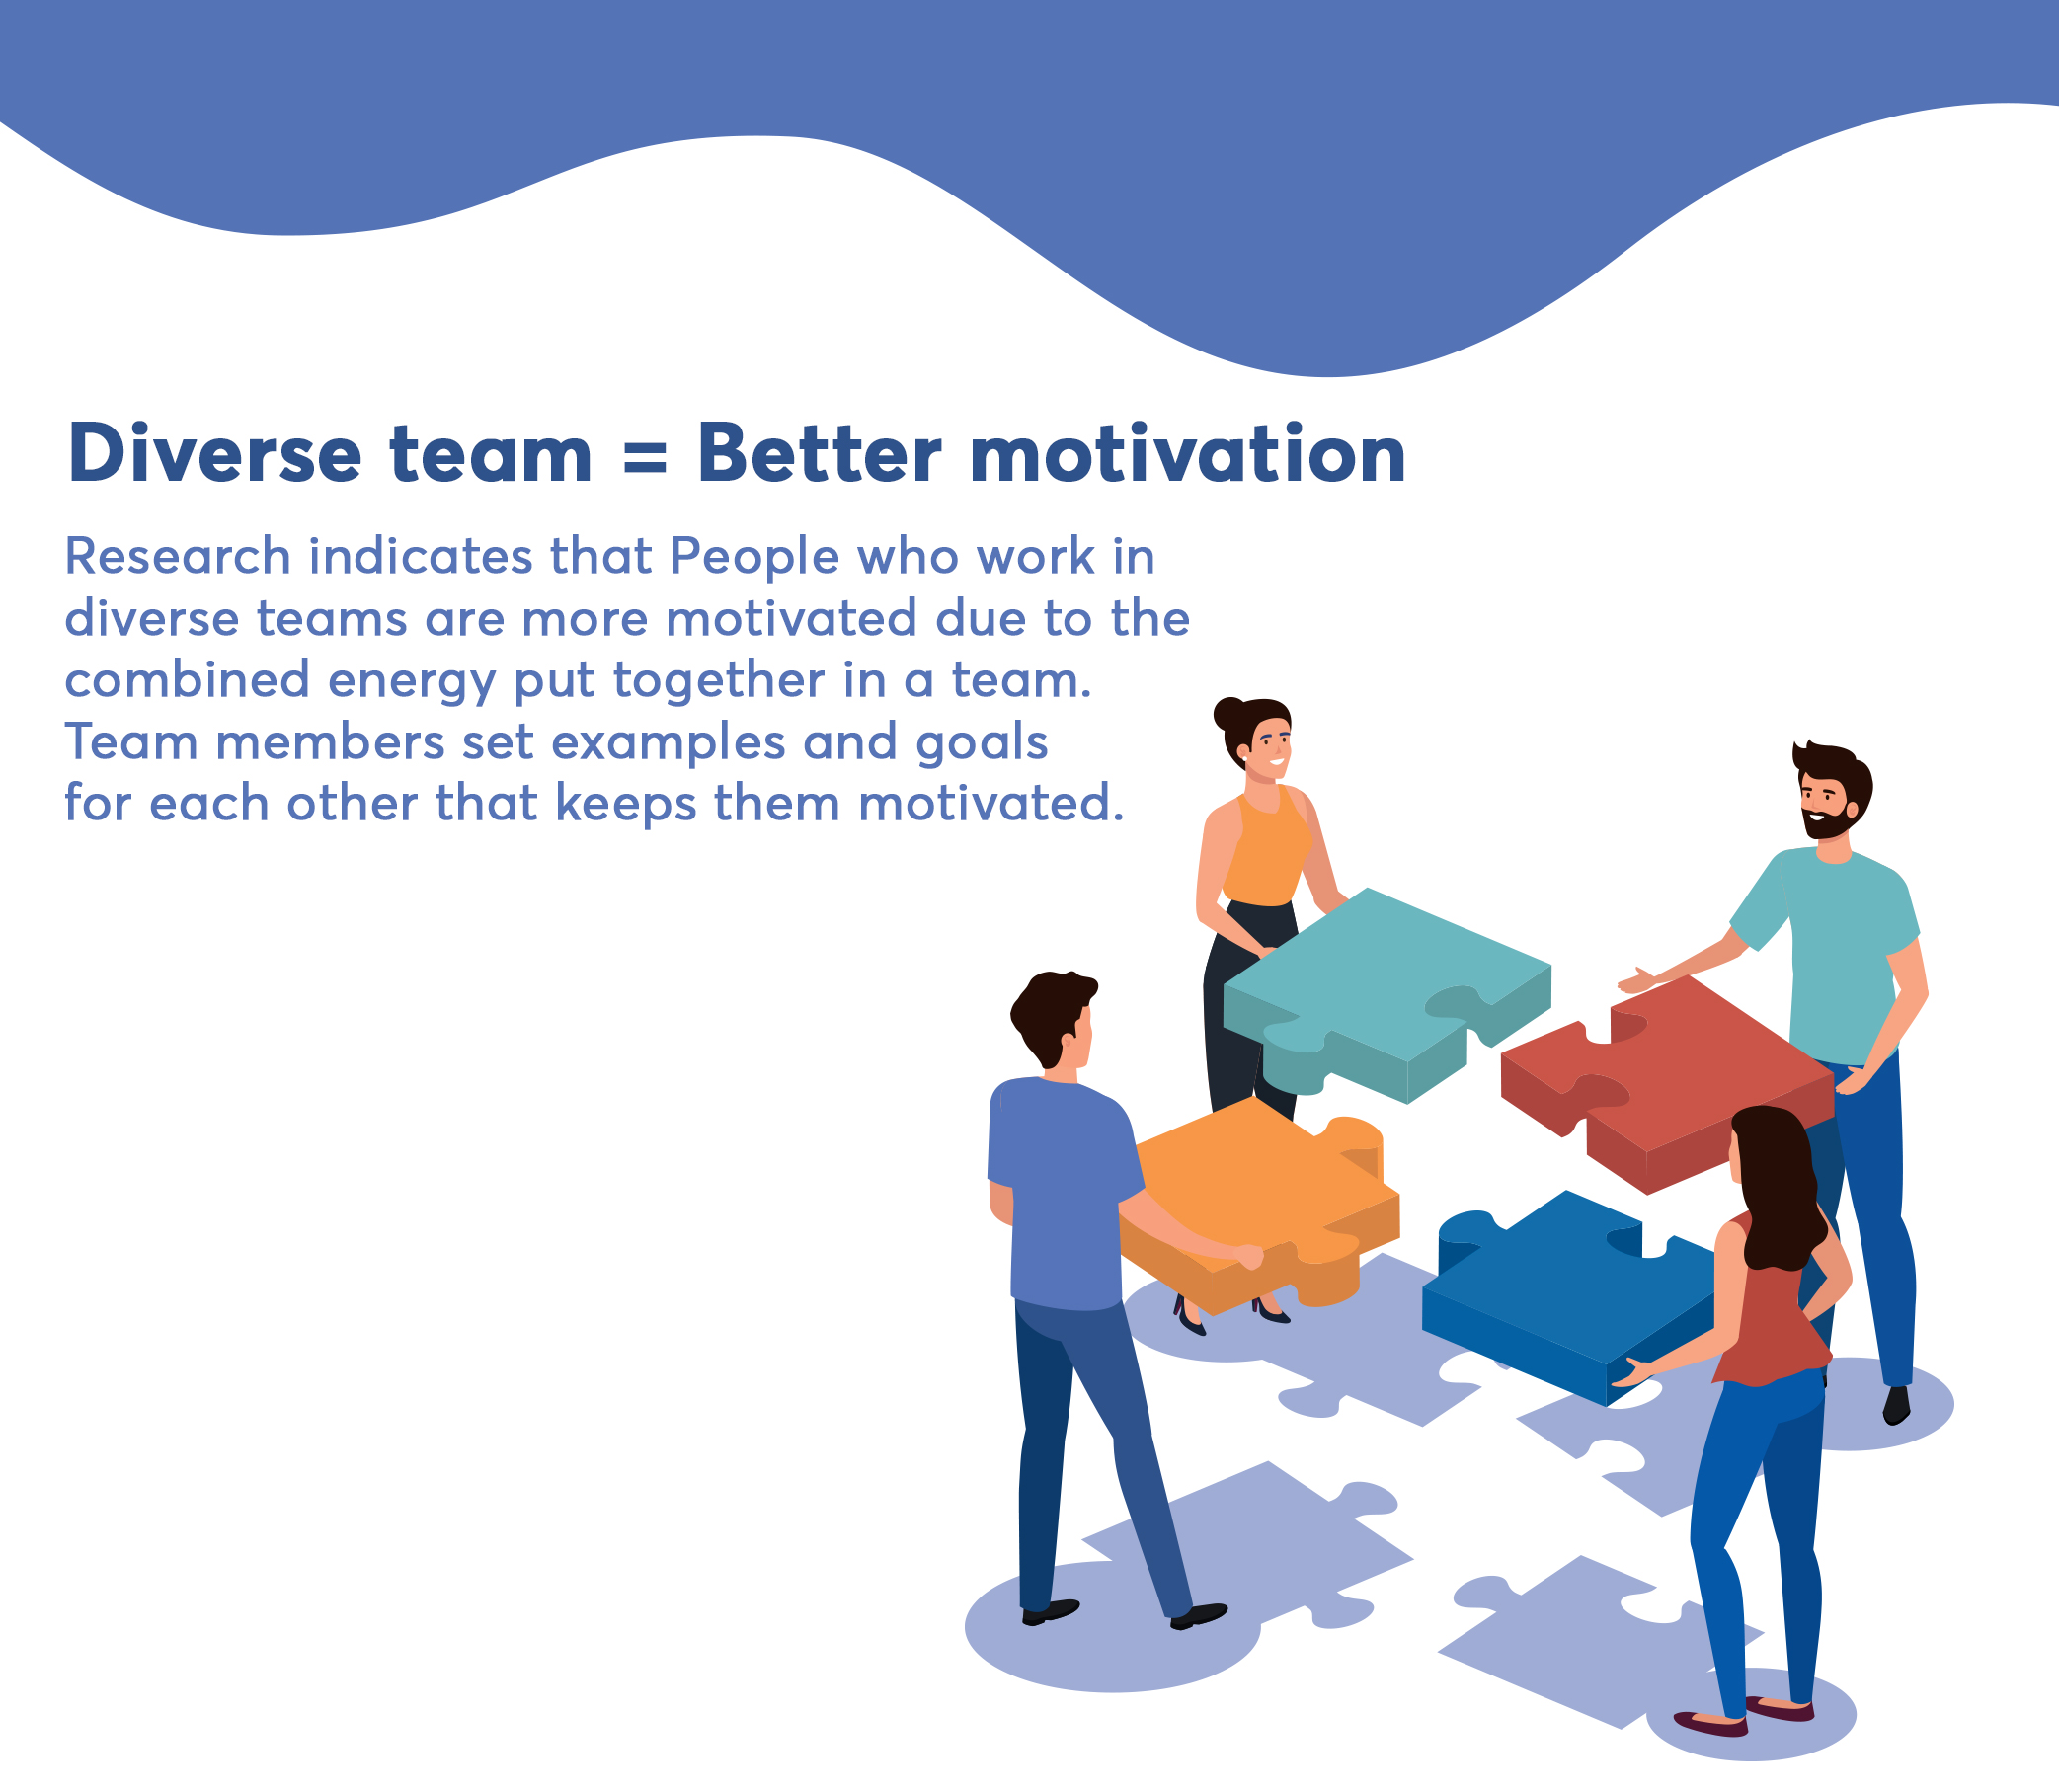 Diverse team = Better motivation